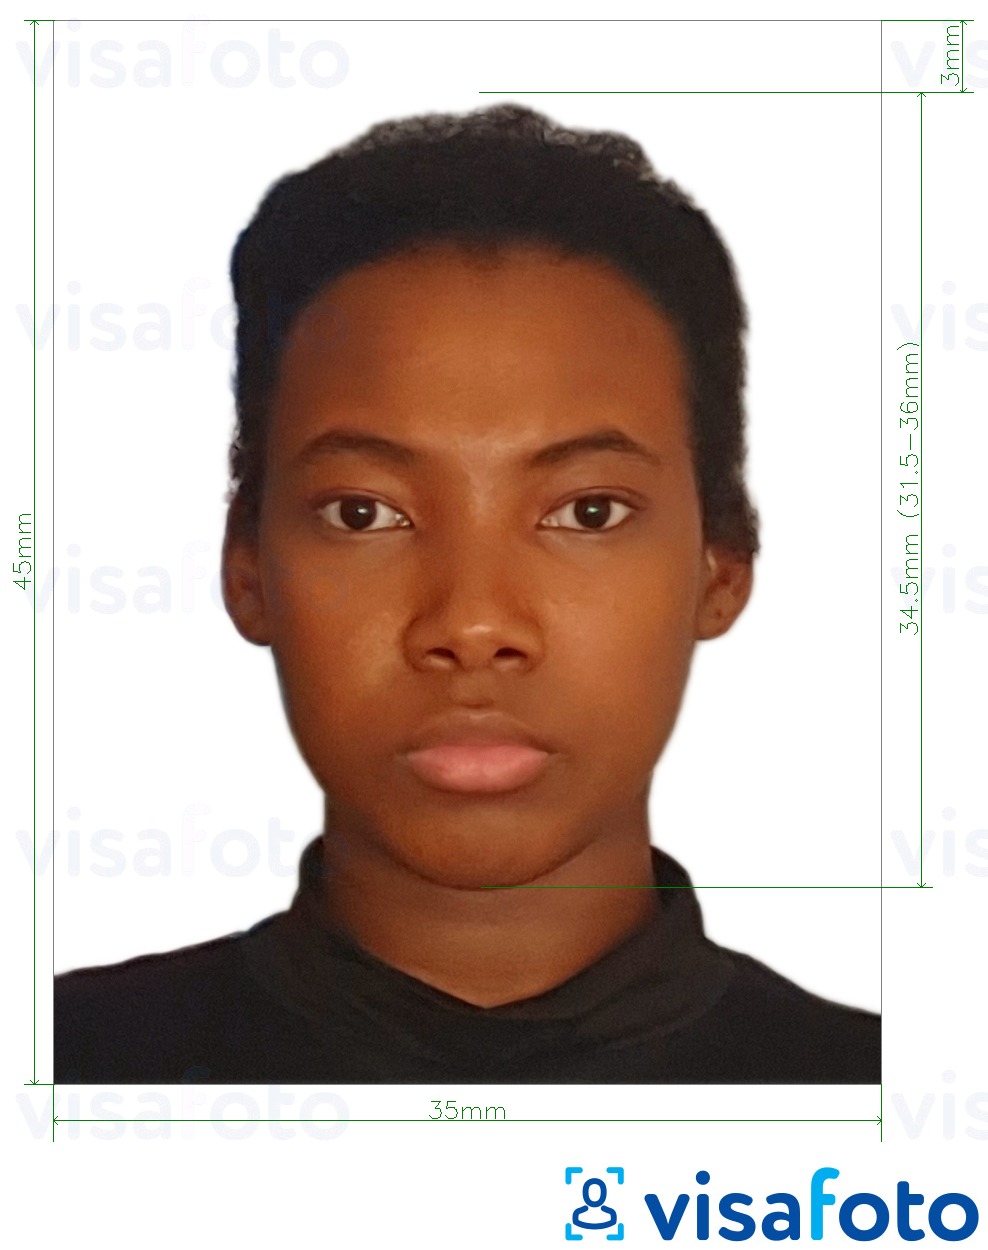 सटीक आकार विनिर्देश के साथ गुयाना पासपोर्ट 45x35 मिमी (1.77 x 1.38 इंच) के लिए तस्वीर का उदाहरण